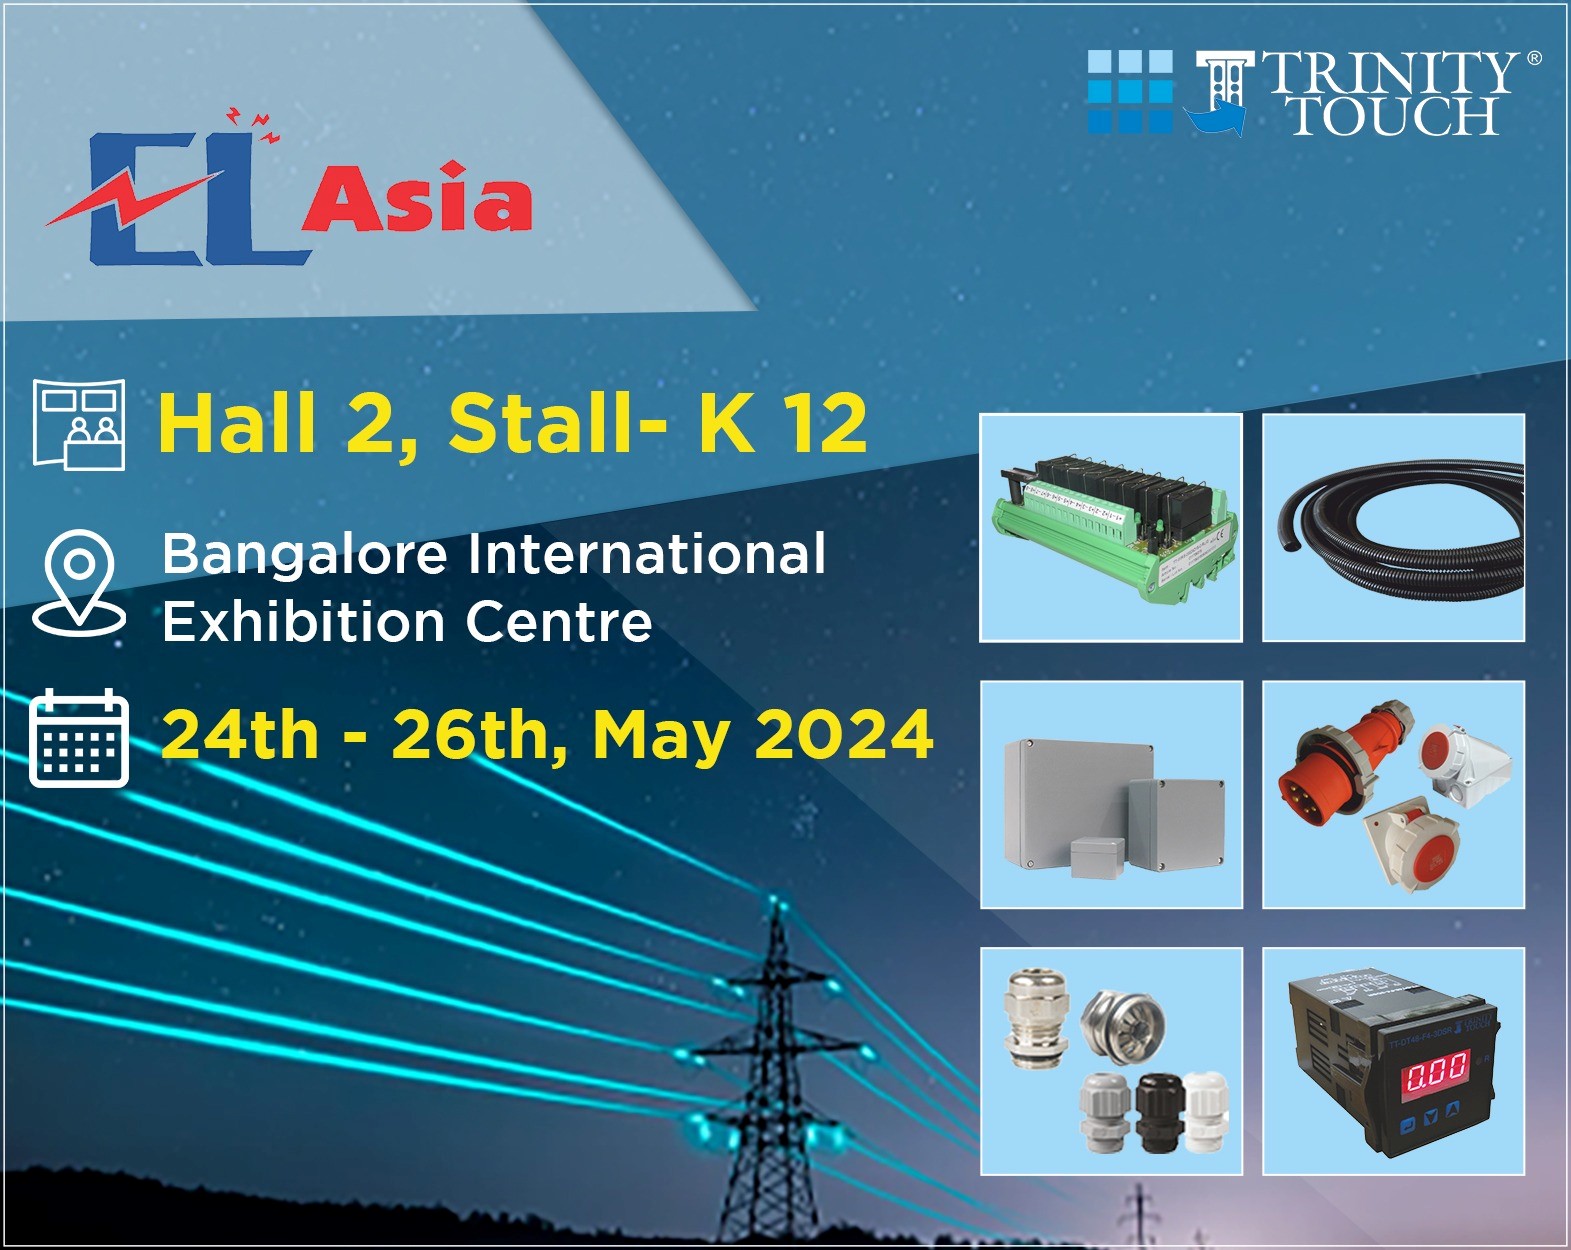 EL-Asia-2024-International-Exhibition-Centre-Bangalore-India-2024